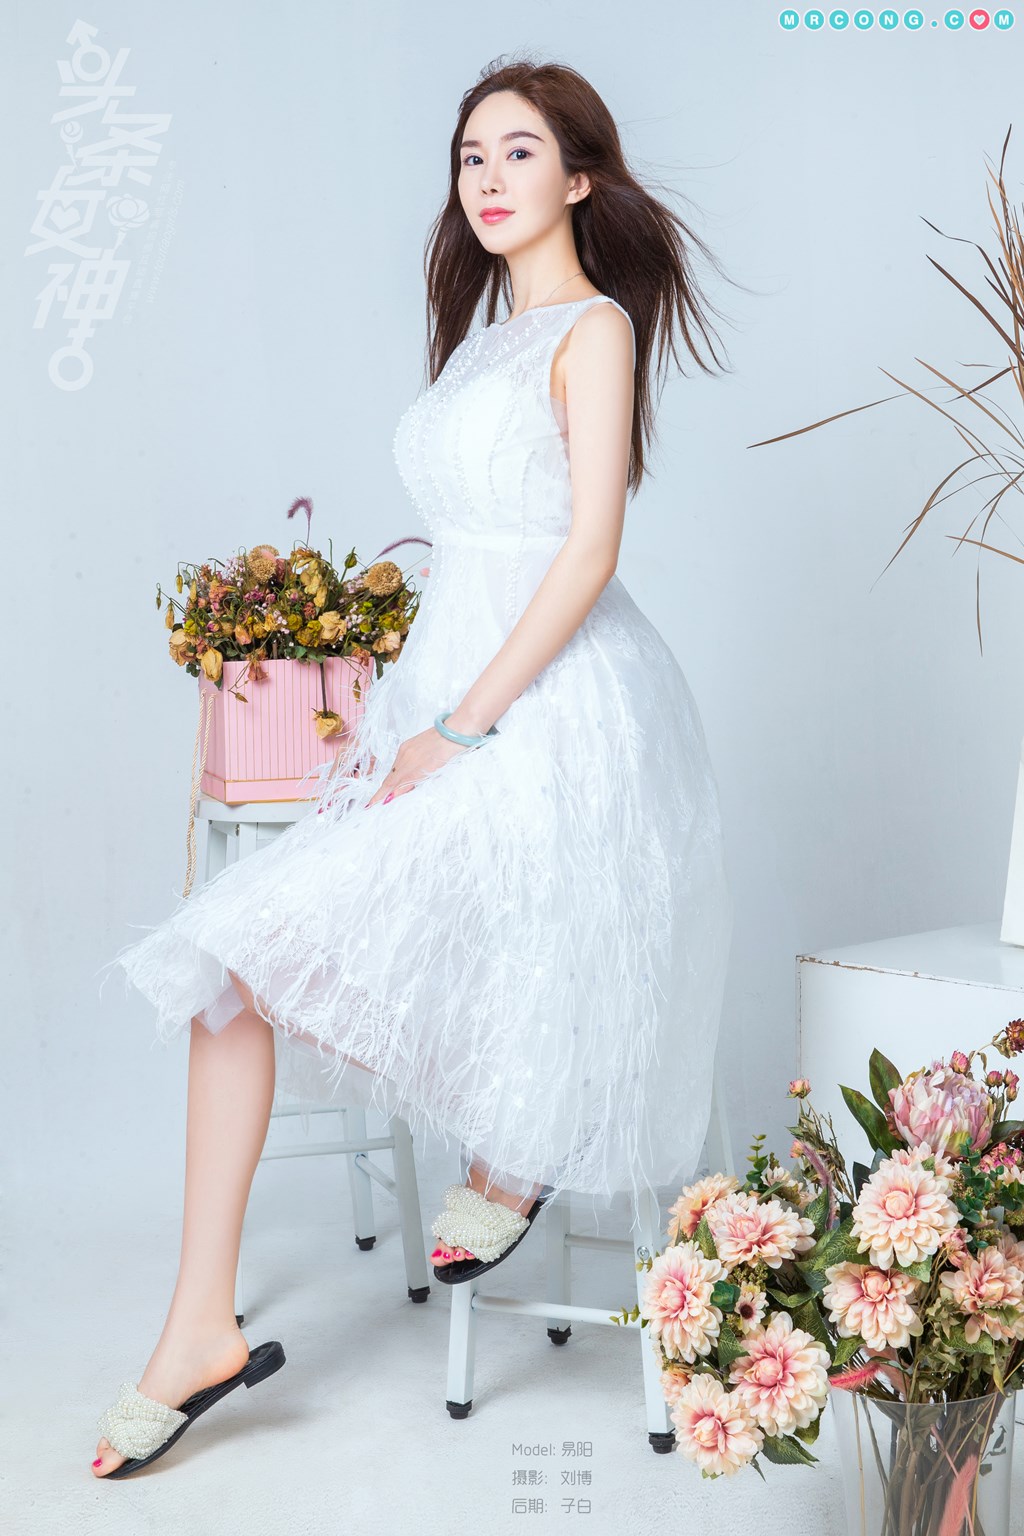 TouTiao 2018-07-27: Model Yi Yang (易 阳) (11 photos) photo 1-7